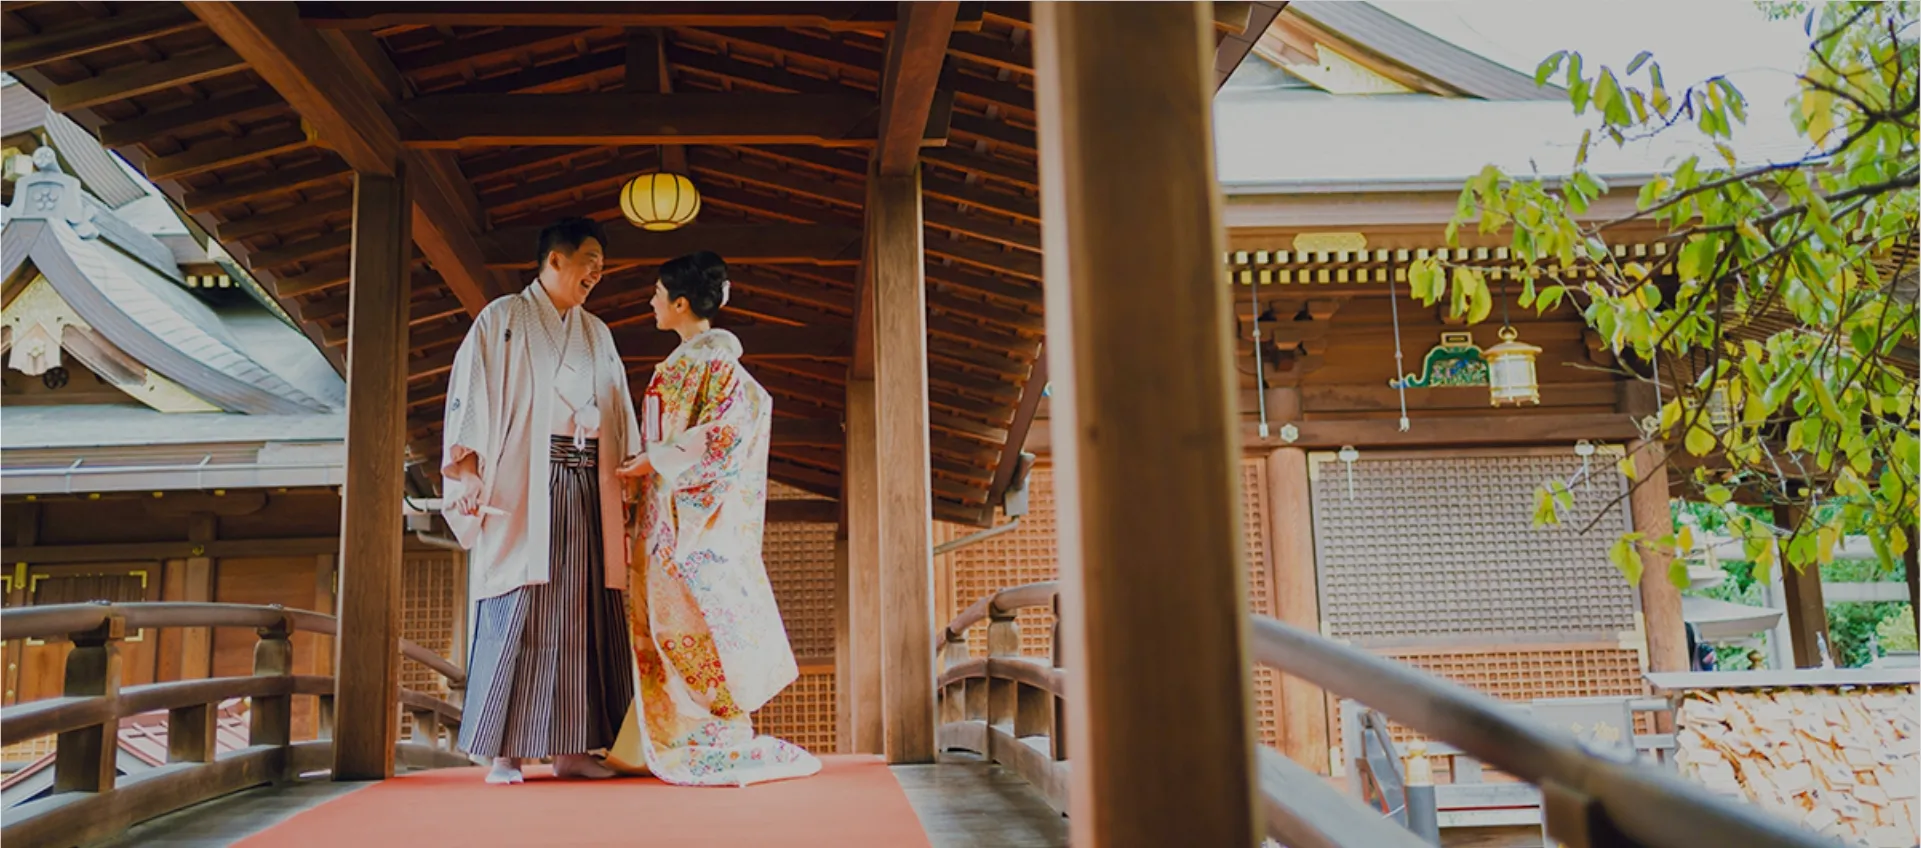 湯島天満宮の太鼓橋で白袴の新郎と着物姿の新婦が見合っている。